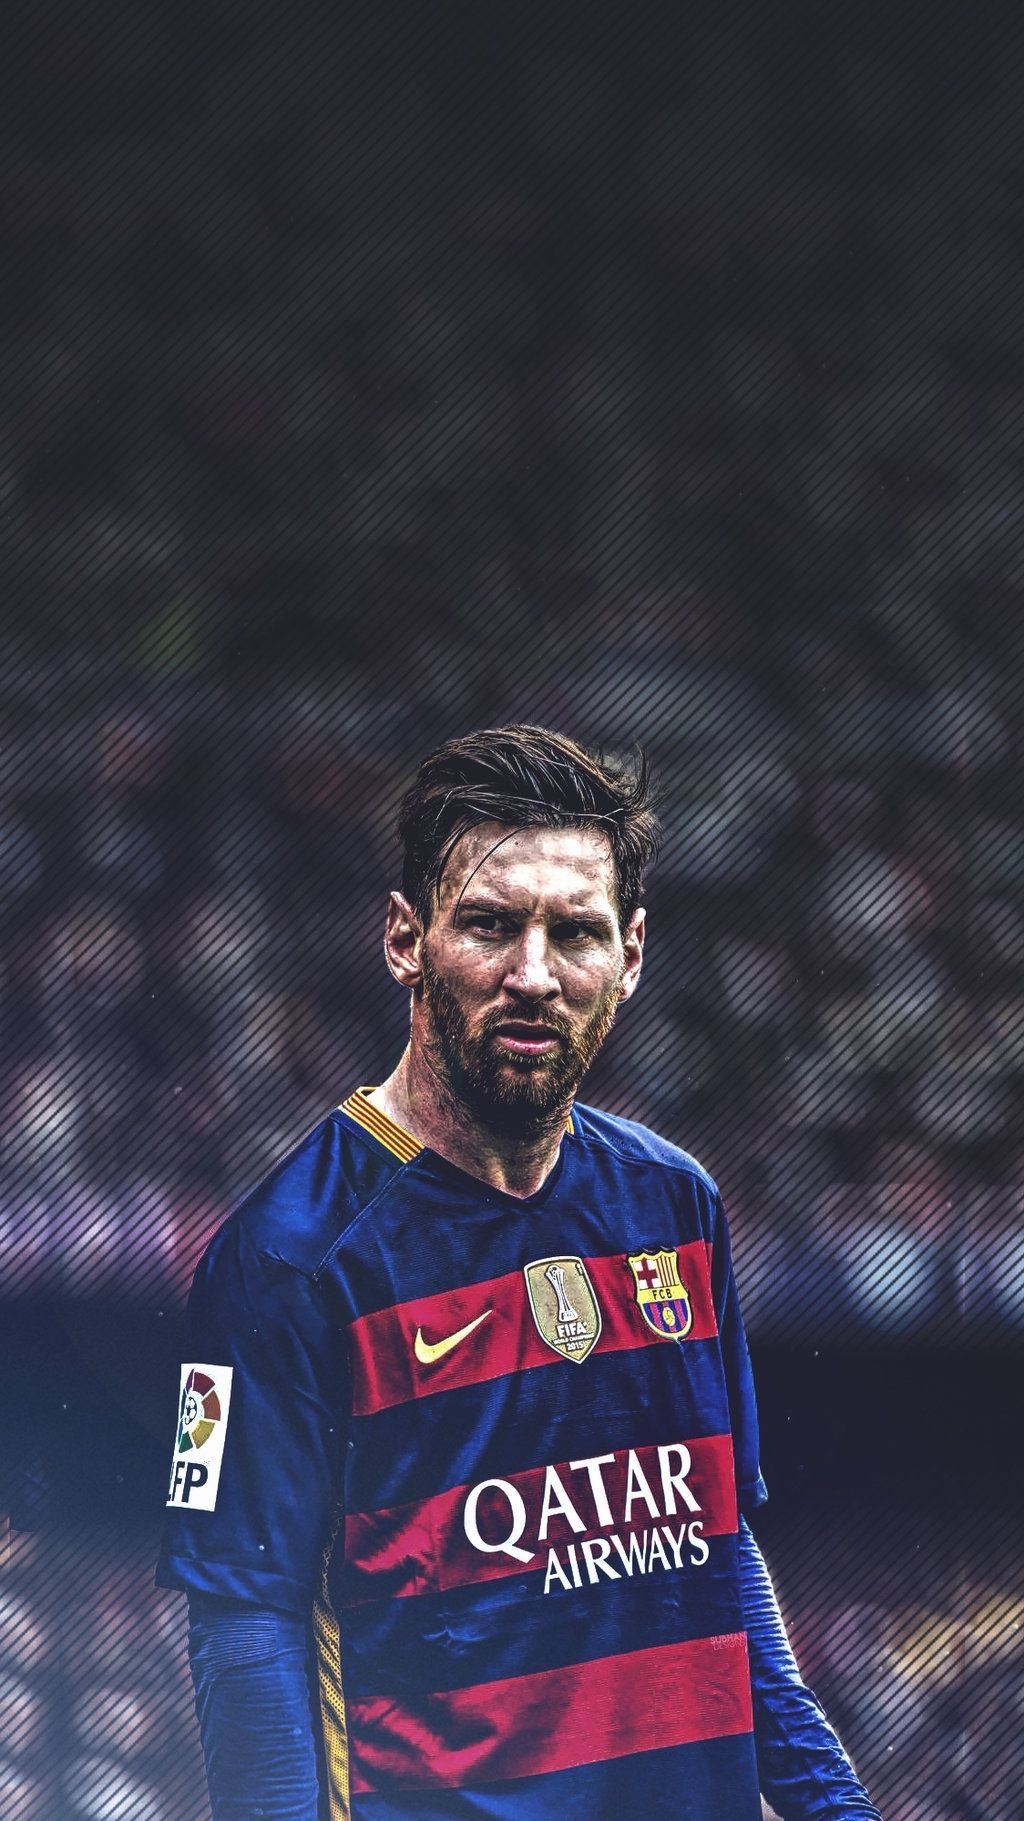 Điểm mặt danh sách những người hâm mộ trung thành của Messi! Những bức ảnh nền HD cho iPhone của Team Messi sẽ khiến bạn phấn khích và tự hào với niềm đam mê bóng đá và sự tối tân của nhà vô địch này.